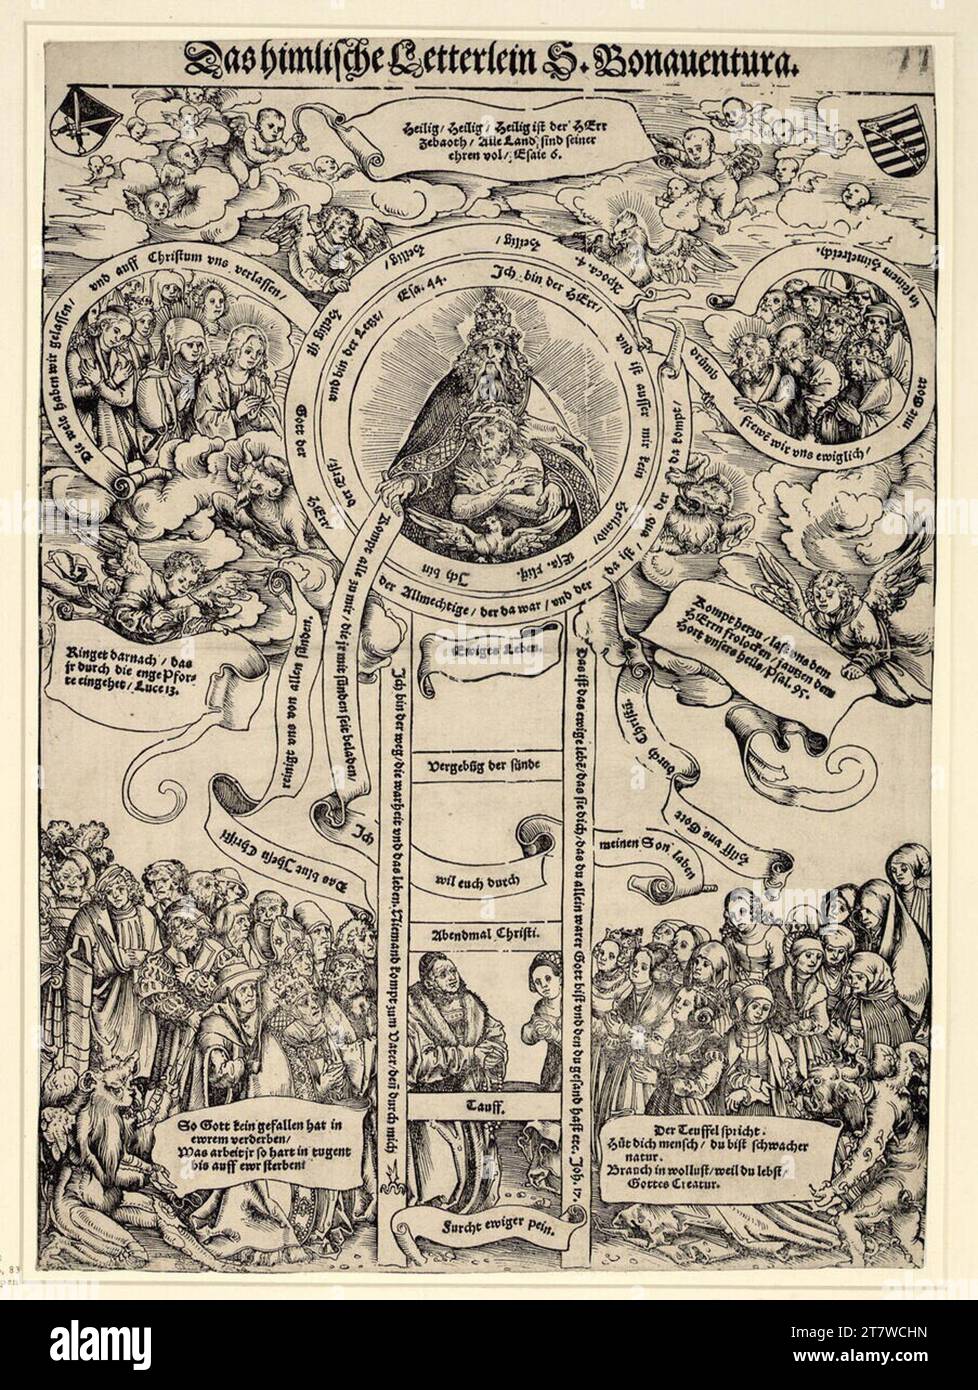 Lucas Cranach d. Ä. L'échelle céleste de Saint Bonaventura. Gravure sur bois et impression typographique vers 1513 Banque D'Images